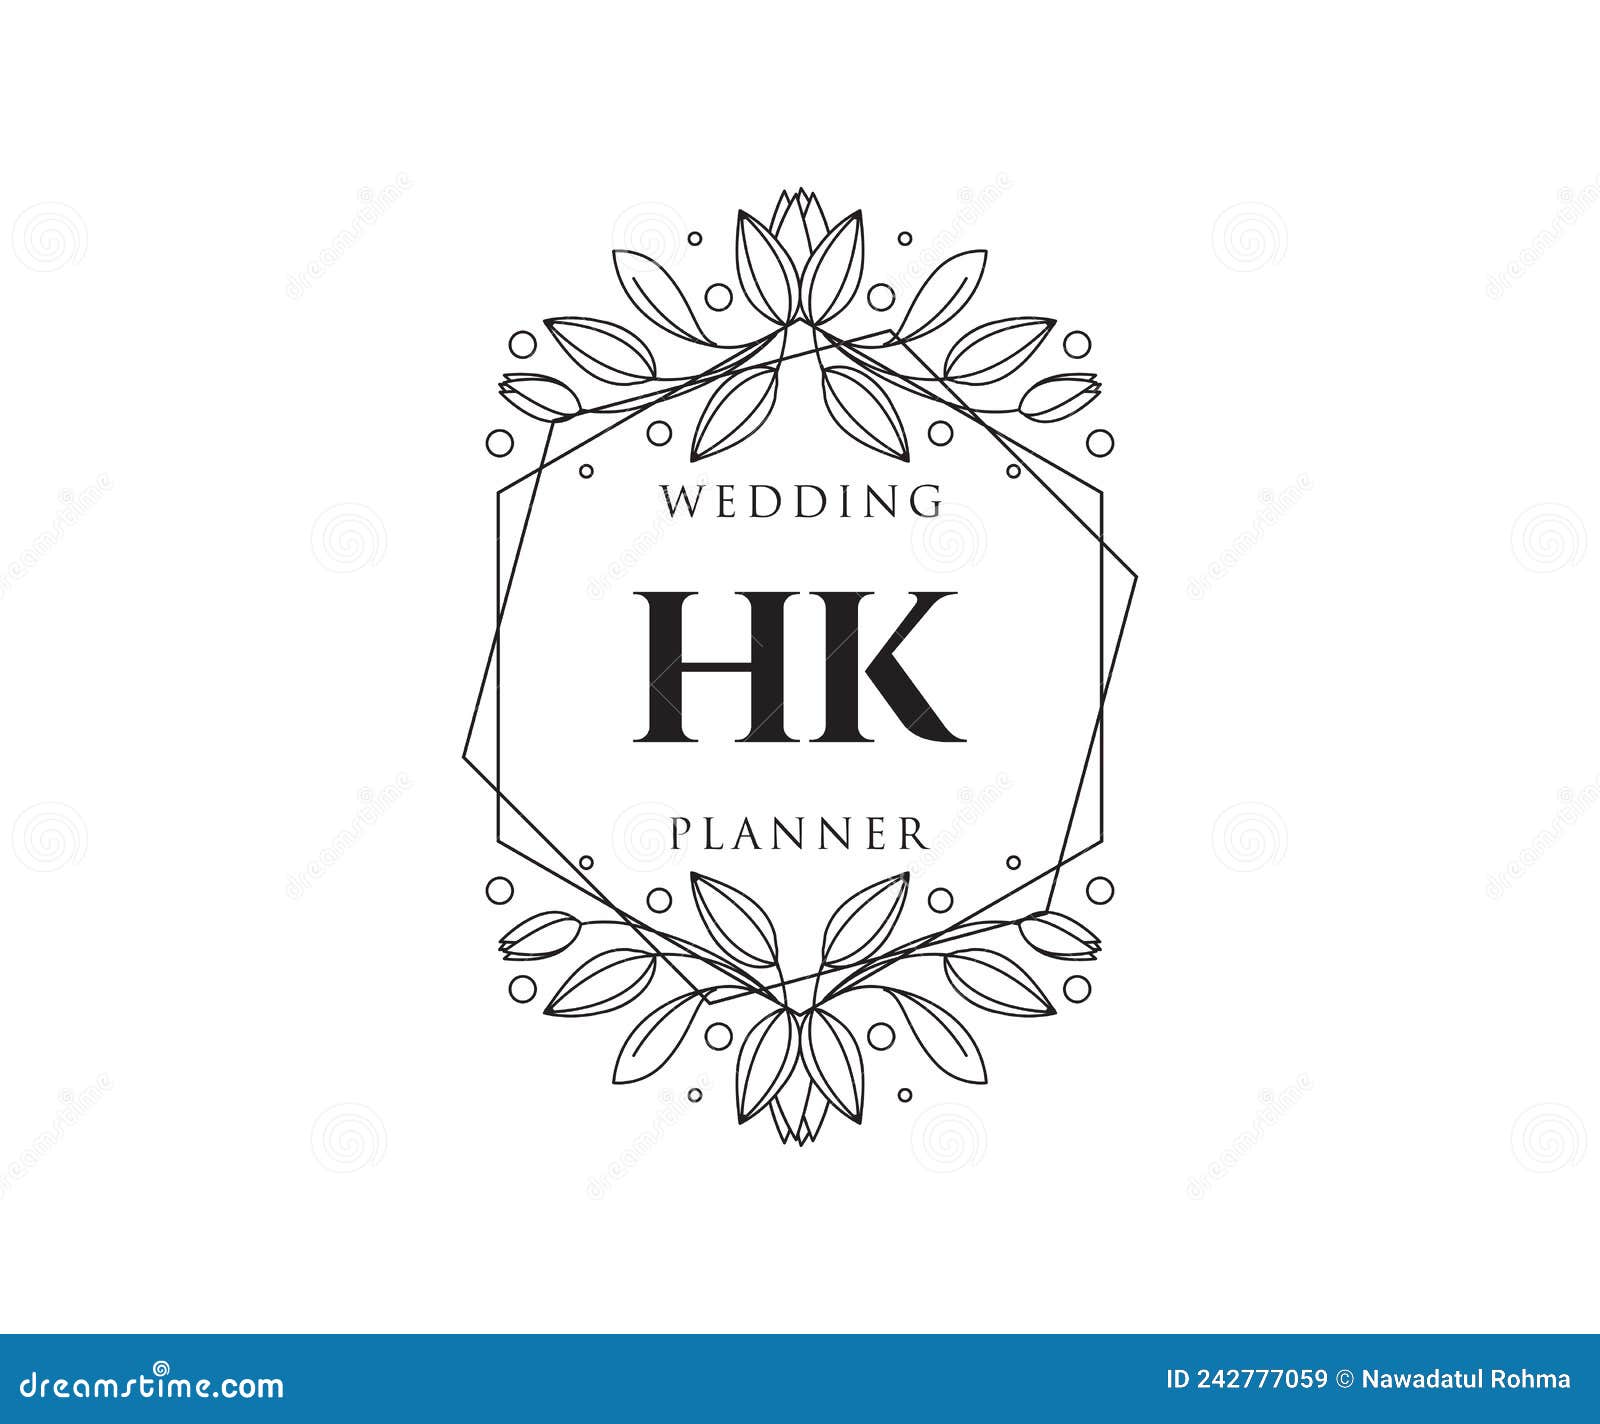 Free Vector  Hand drawn wedding logo collectio